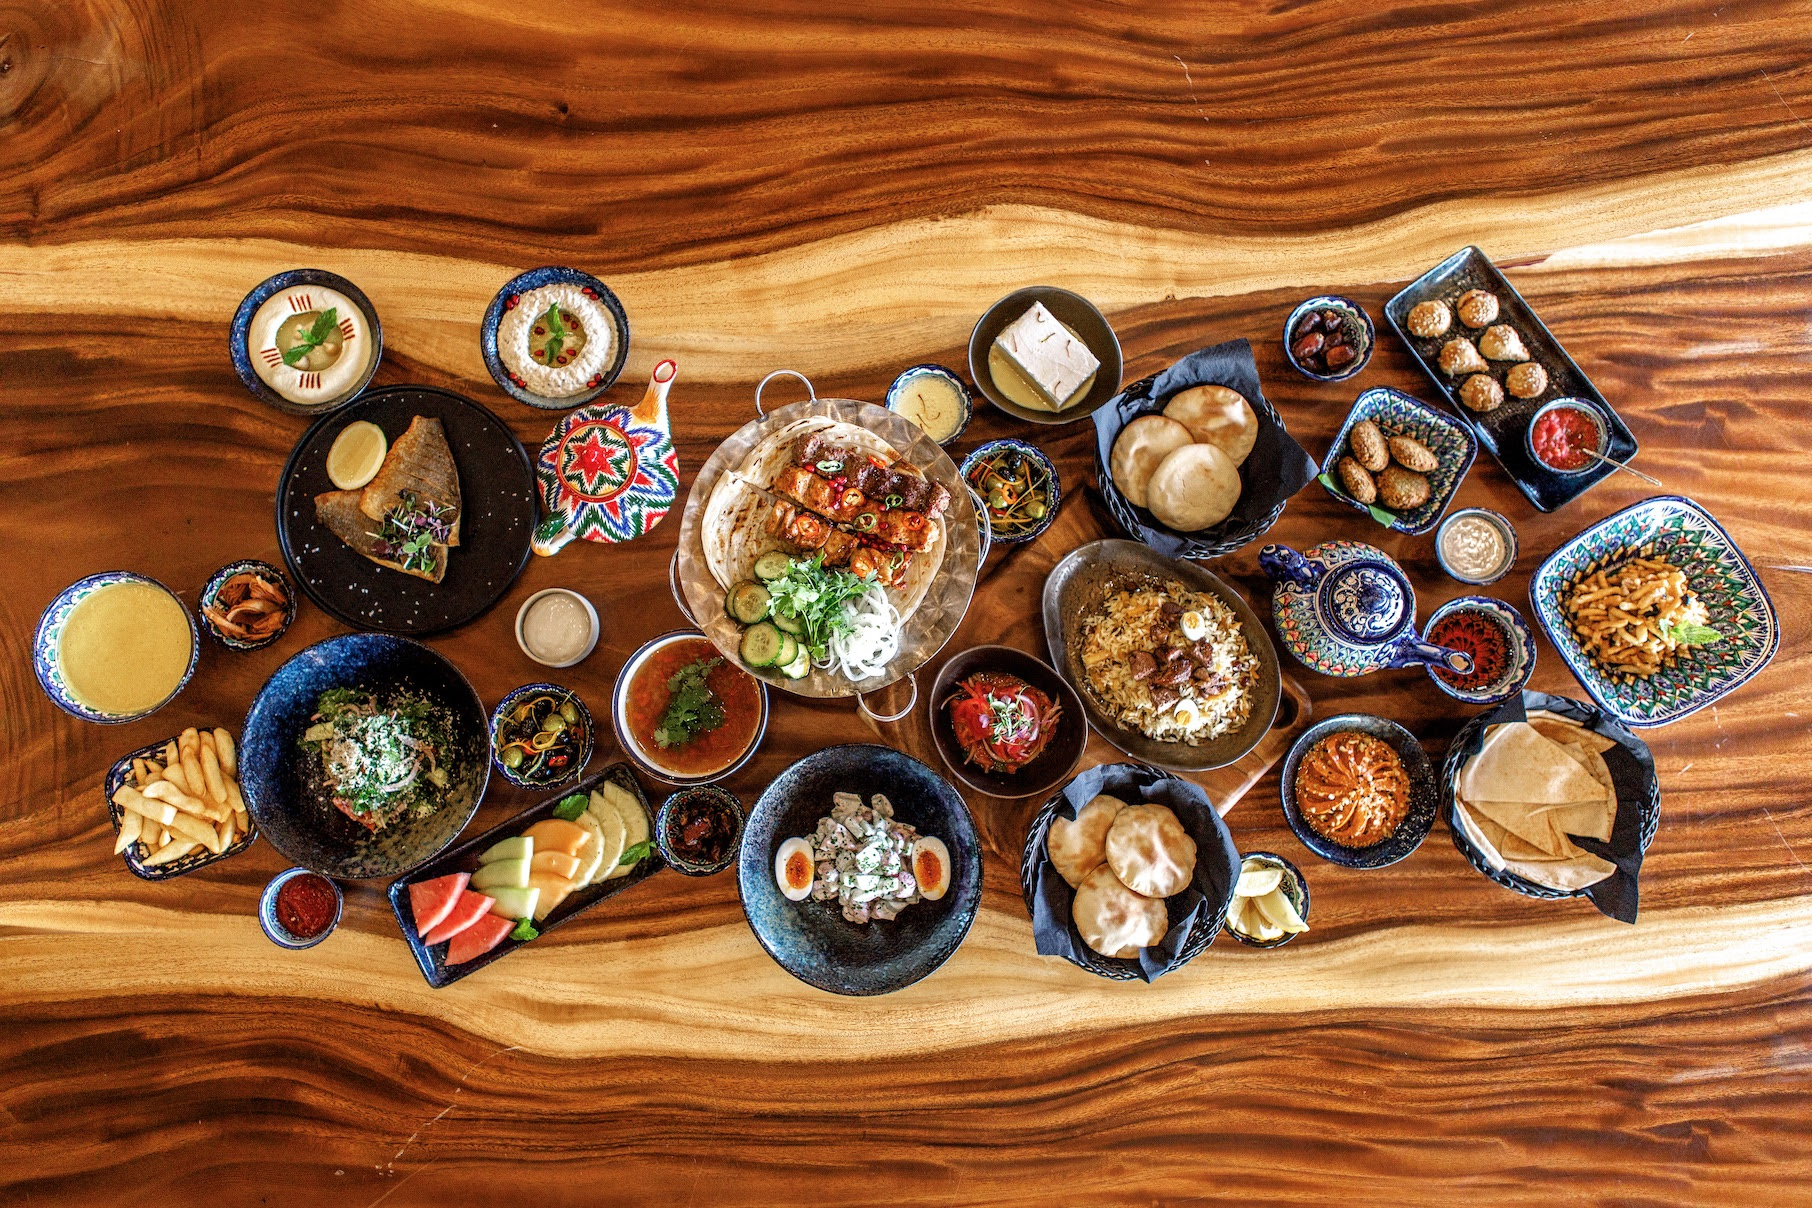 مطعم أوش يقدم قائمة إفطار أوزبكية استثنائية خلال رمضان 2019